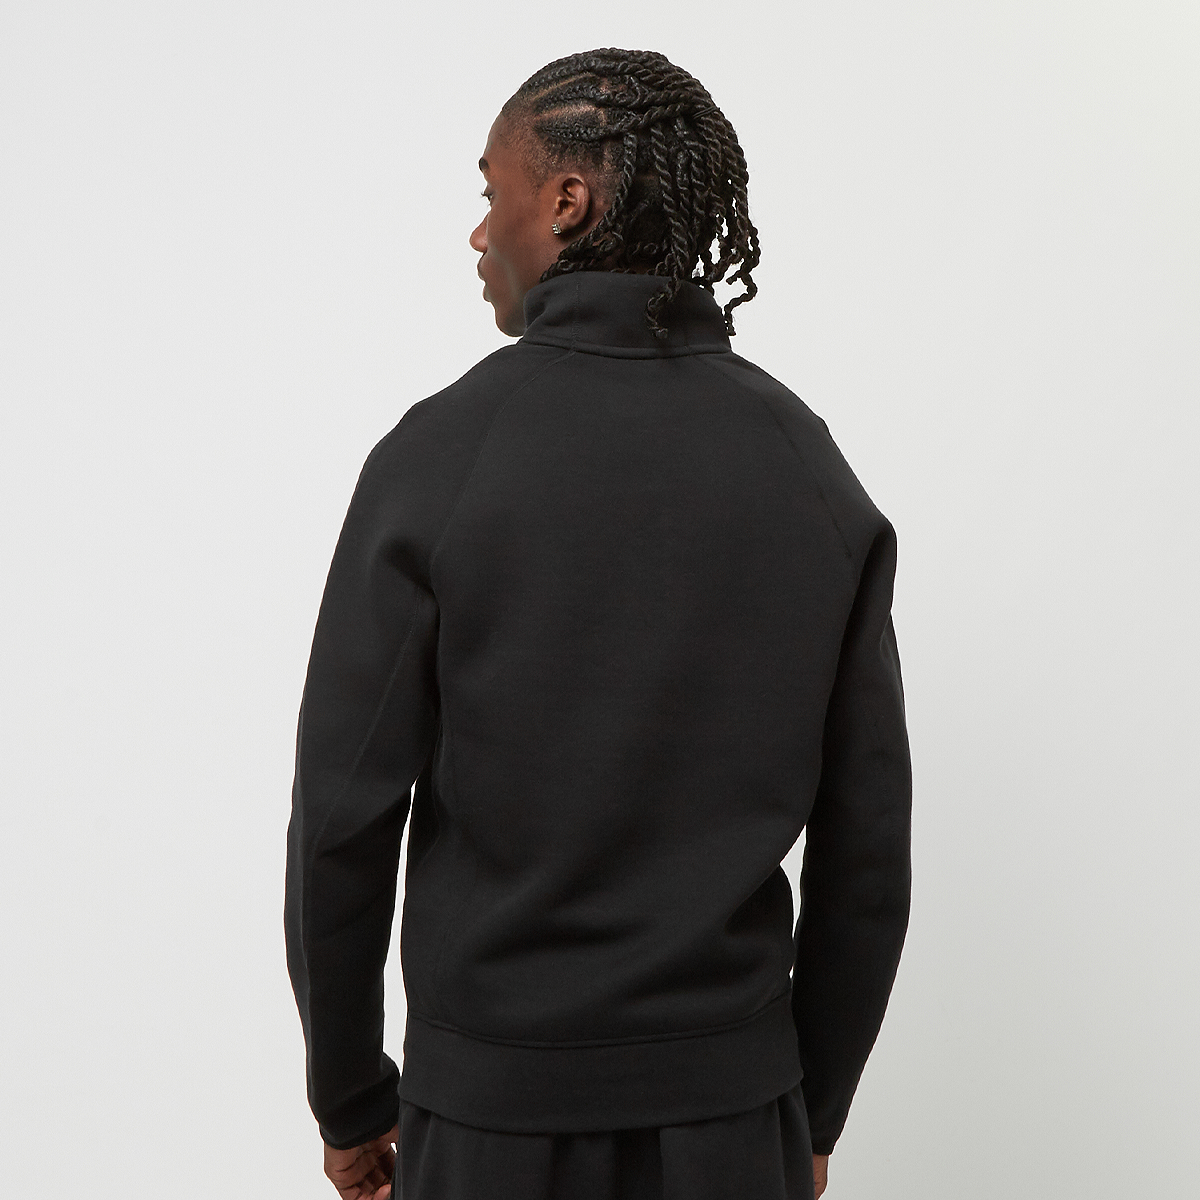 Nike Tech Fleece High Zip Top Hooded vesten Kleding black black maat: S beschikbare maaten:S